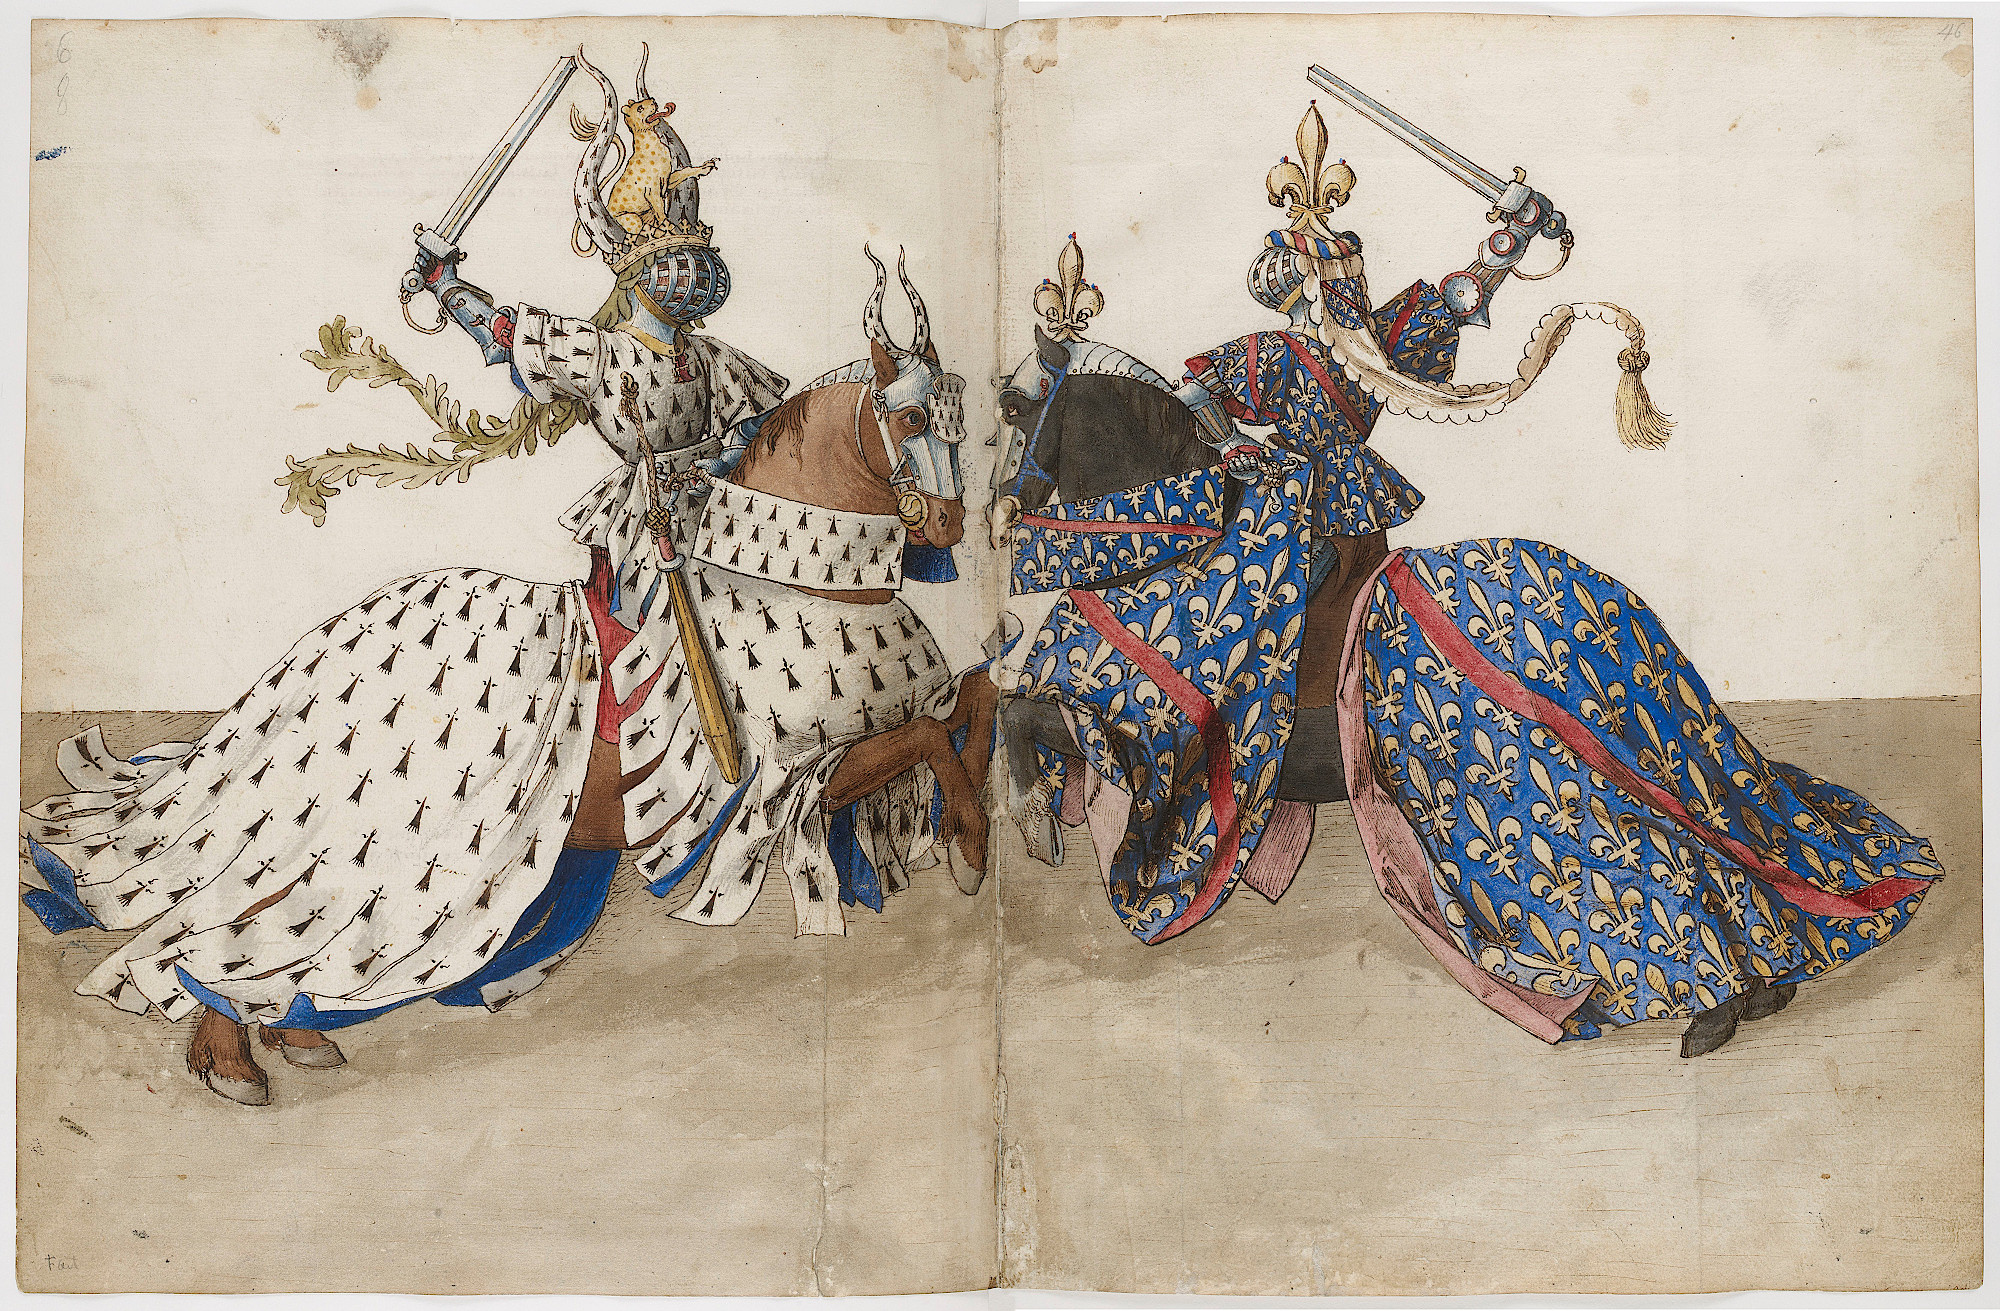 Średniowieczna iluminacja przedstawiająca dwóch walczących rycerzy. Obaj siedzą na przeciw siebie na lekko wspiętych koniach i trzymają w wzniesione miecze. Na zasłaniających całą twarz hełmach znajdują się klejnoty heraldyczne, podobnie jak na głowach koni. Obaj walczący mają na sobie szaty heraldyczne (biały i błękitny). Konie okryte są szatami heraldycznymi.